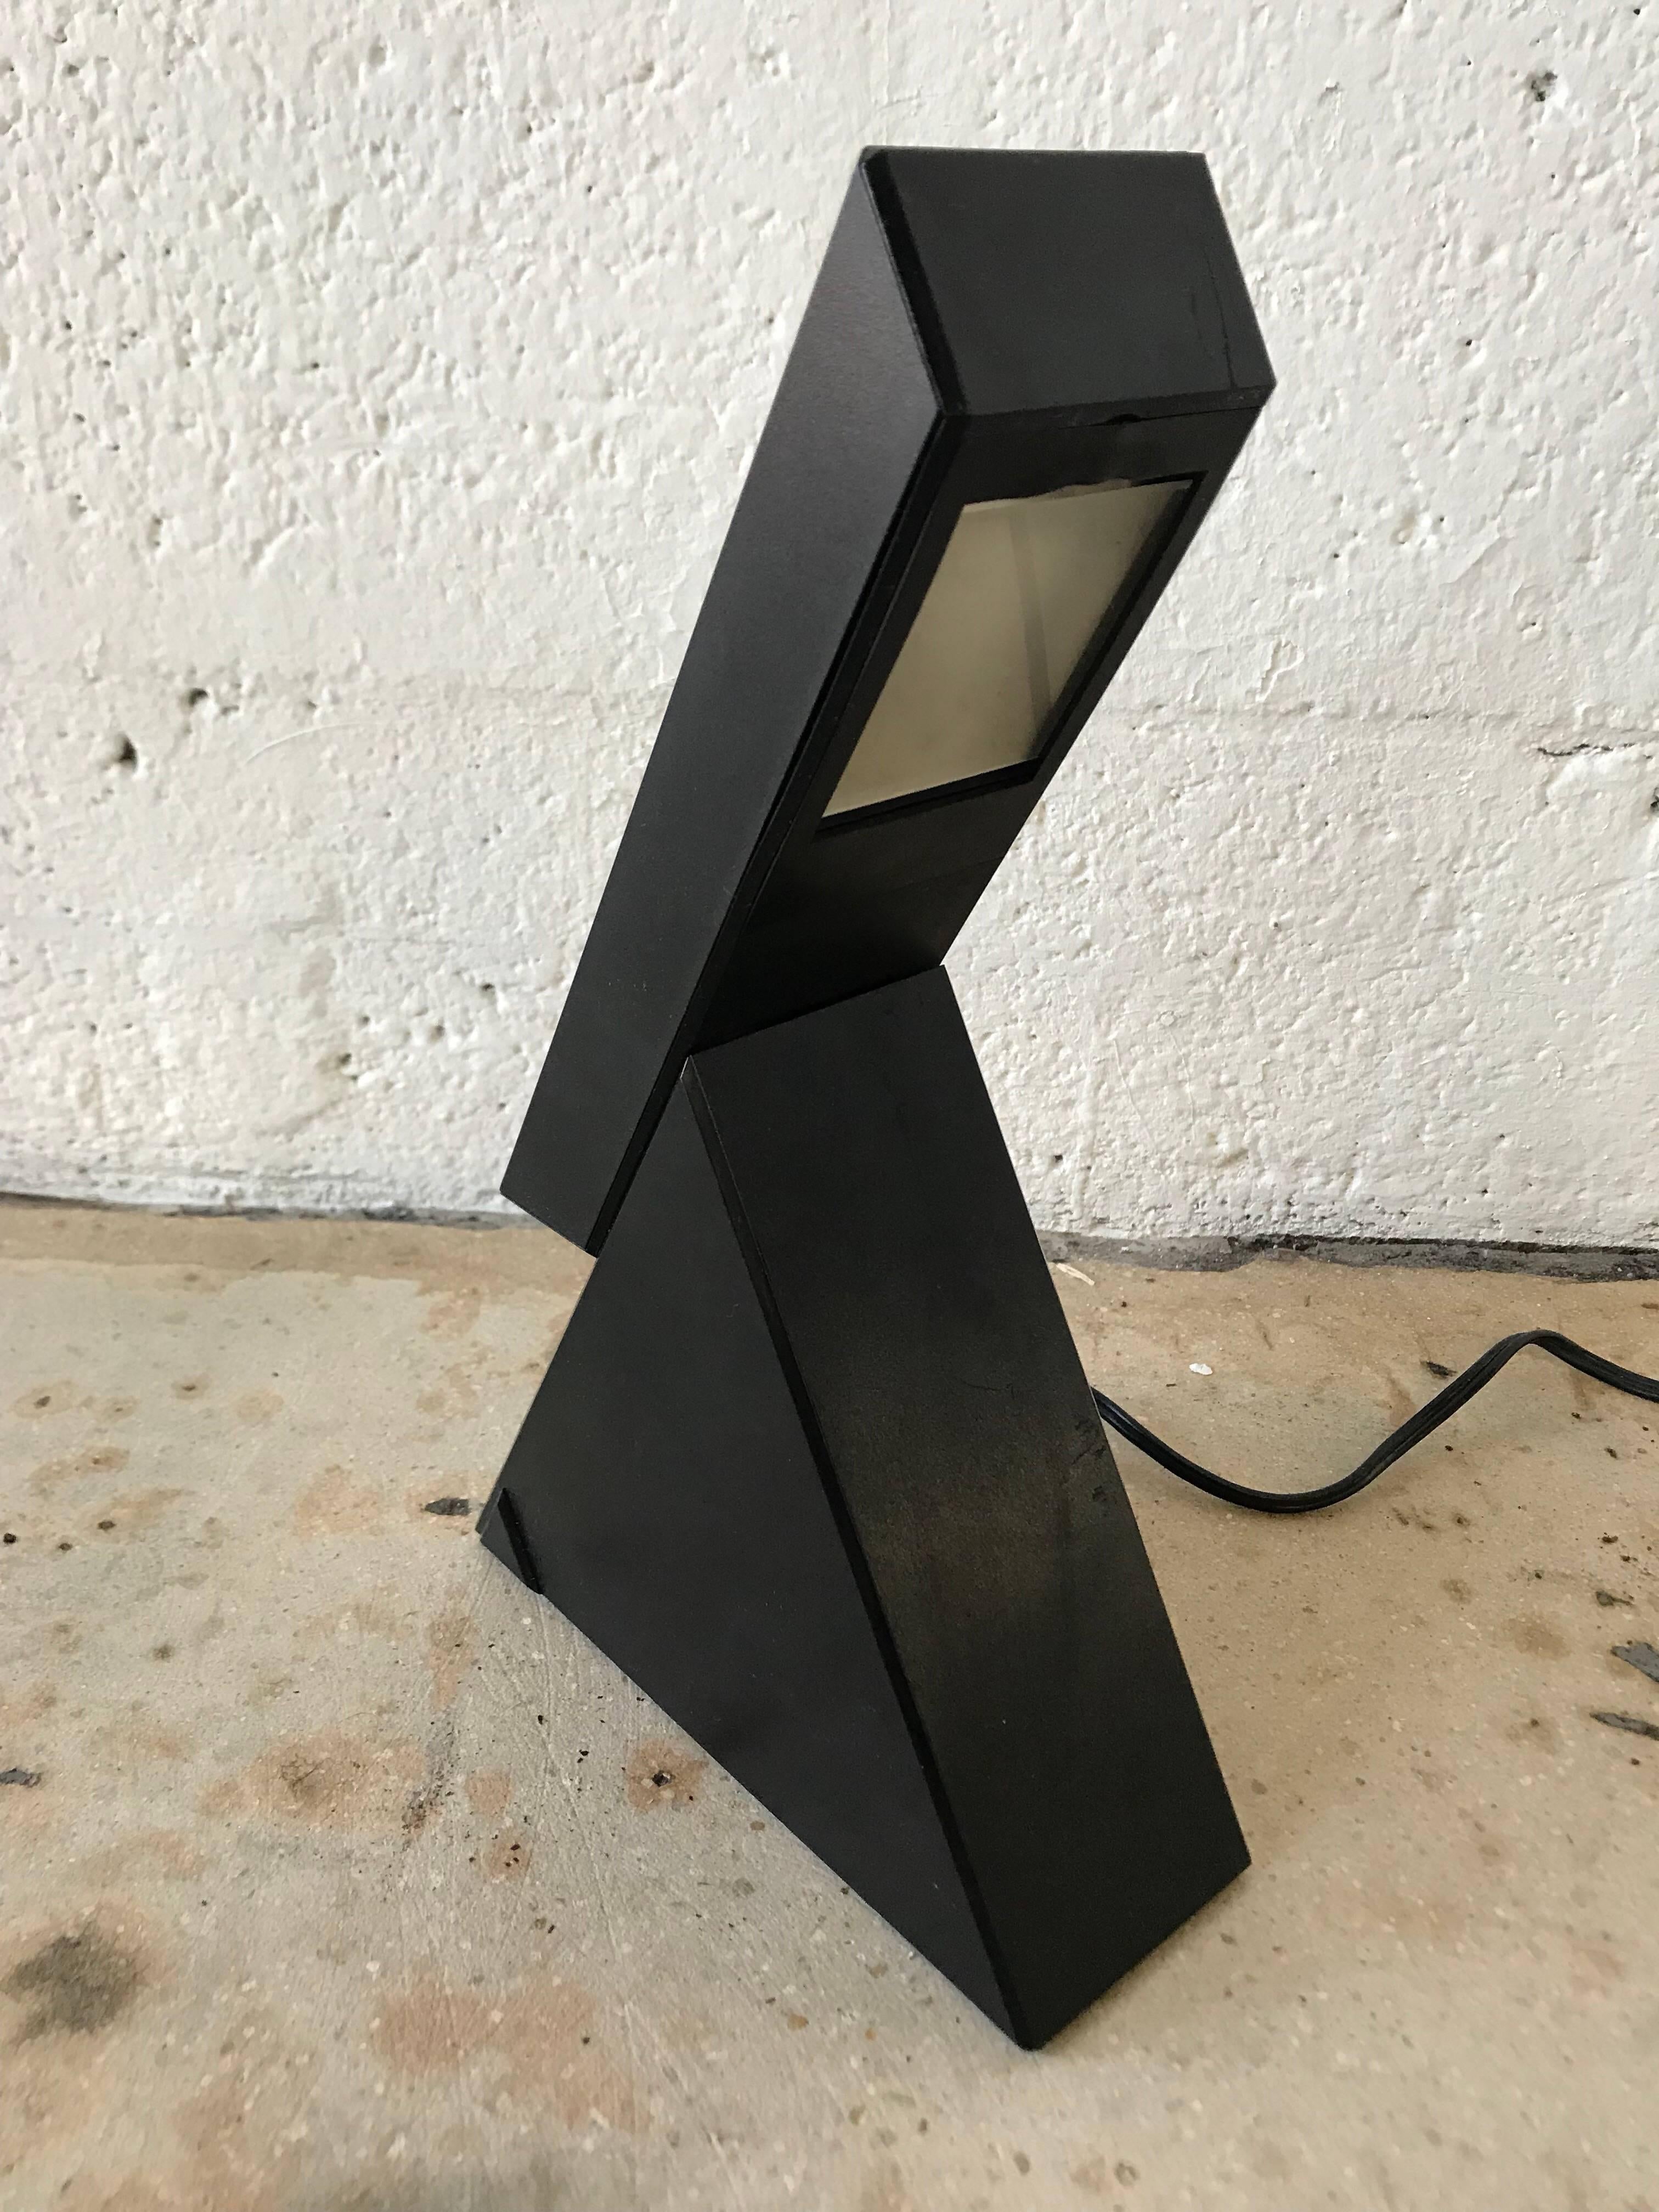 Einzigartiges geometrisches Paar postmoderner Schiebetischlampen, entworfen von Mario Bertorelle für JM RDM Massanzago, Italien. Geschlossen haben die Lampen die Form eines Pyramidendreiecks, geöffnet erhebt sich eine freitragende Leuchte von oben,